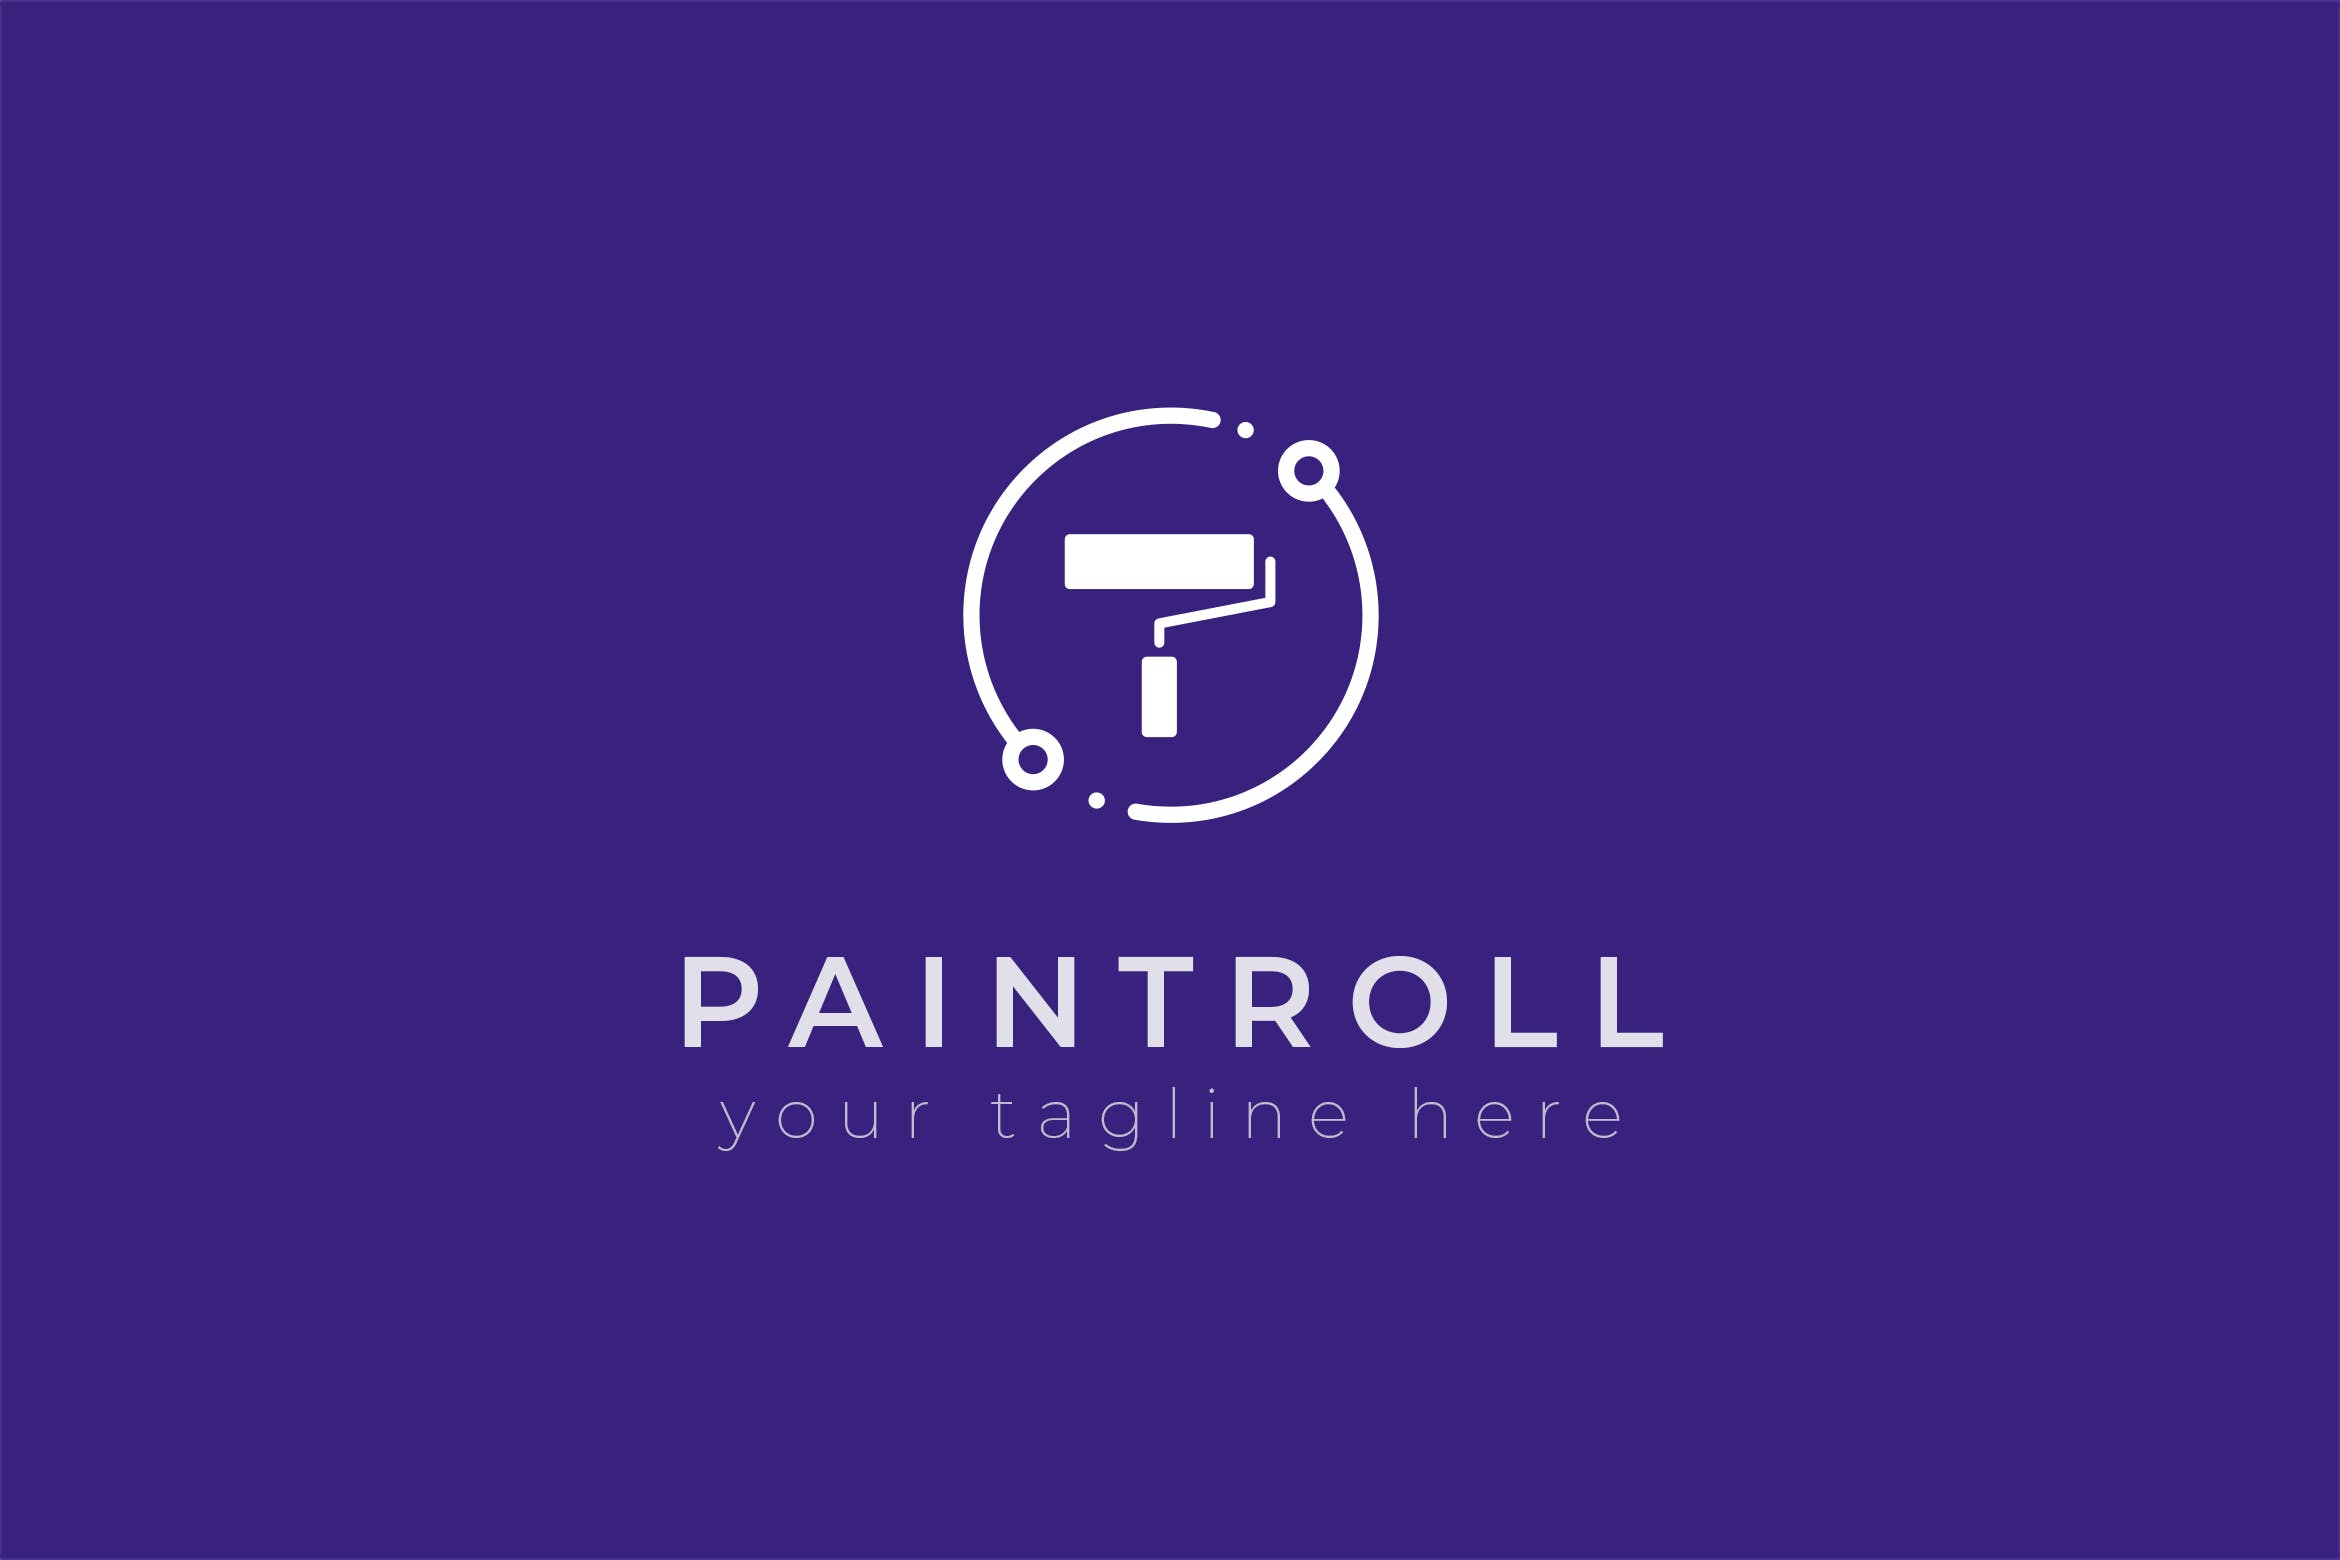 油漆品牌油漆滚刷图形Logo设计第一素材精选模板 Paintroll – Premium Logo Template插图